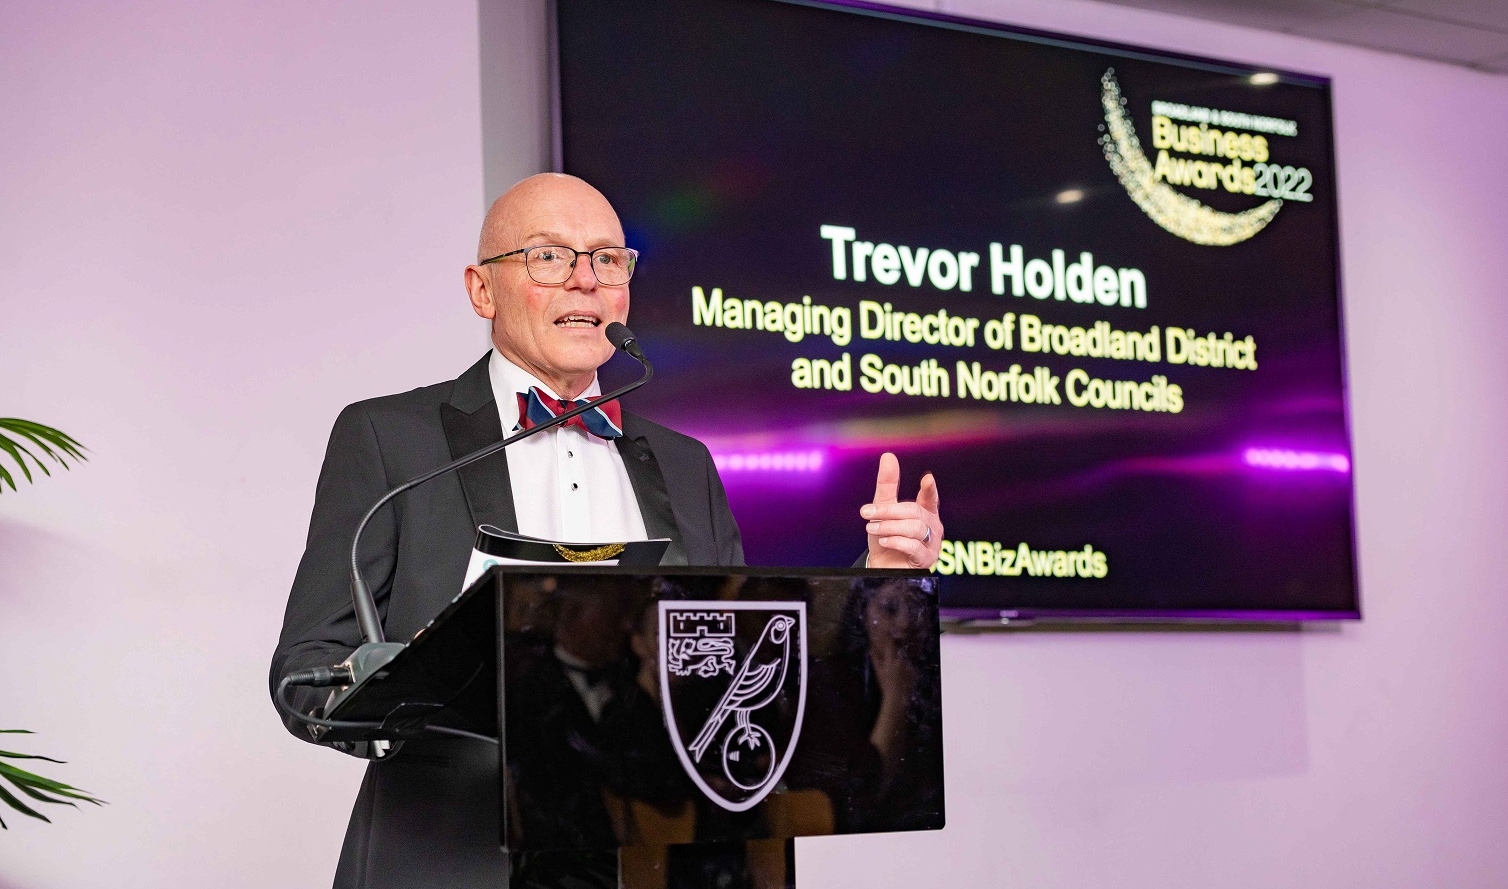 Managing Director Trevor Holden hosting the Business Awards 2022